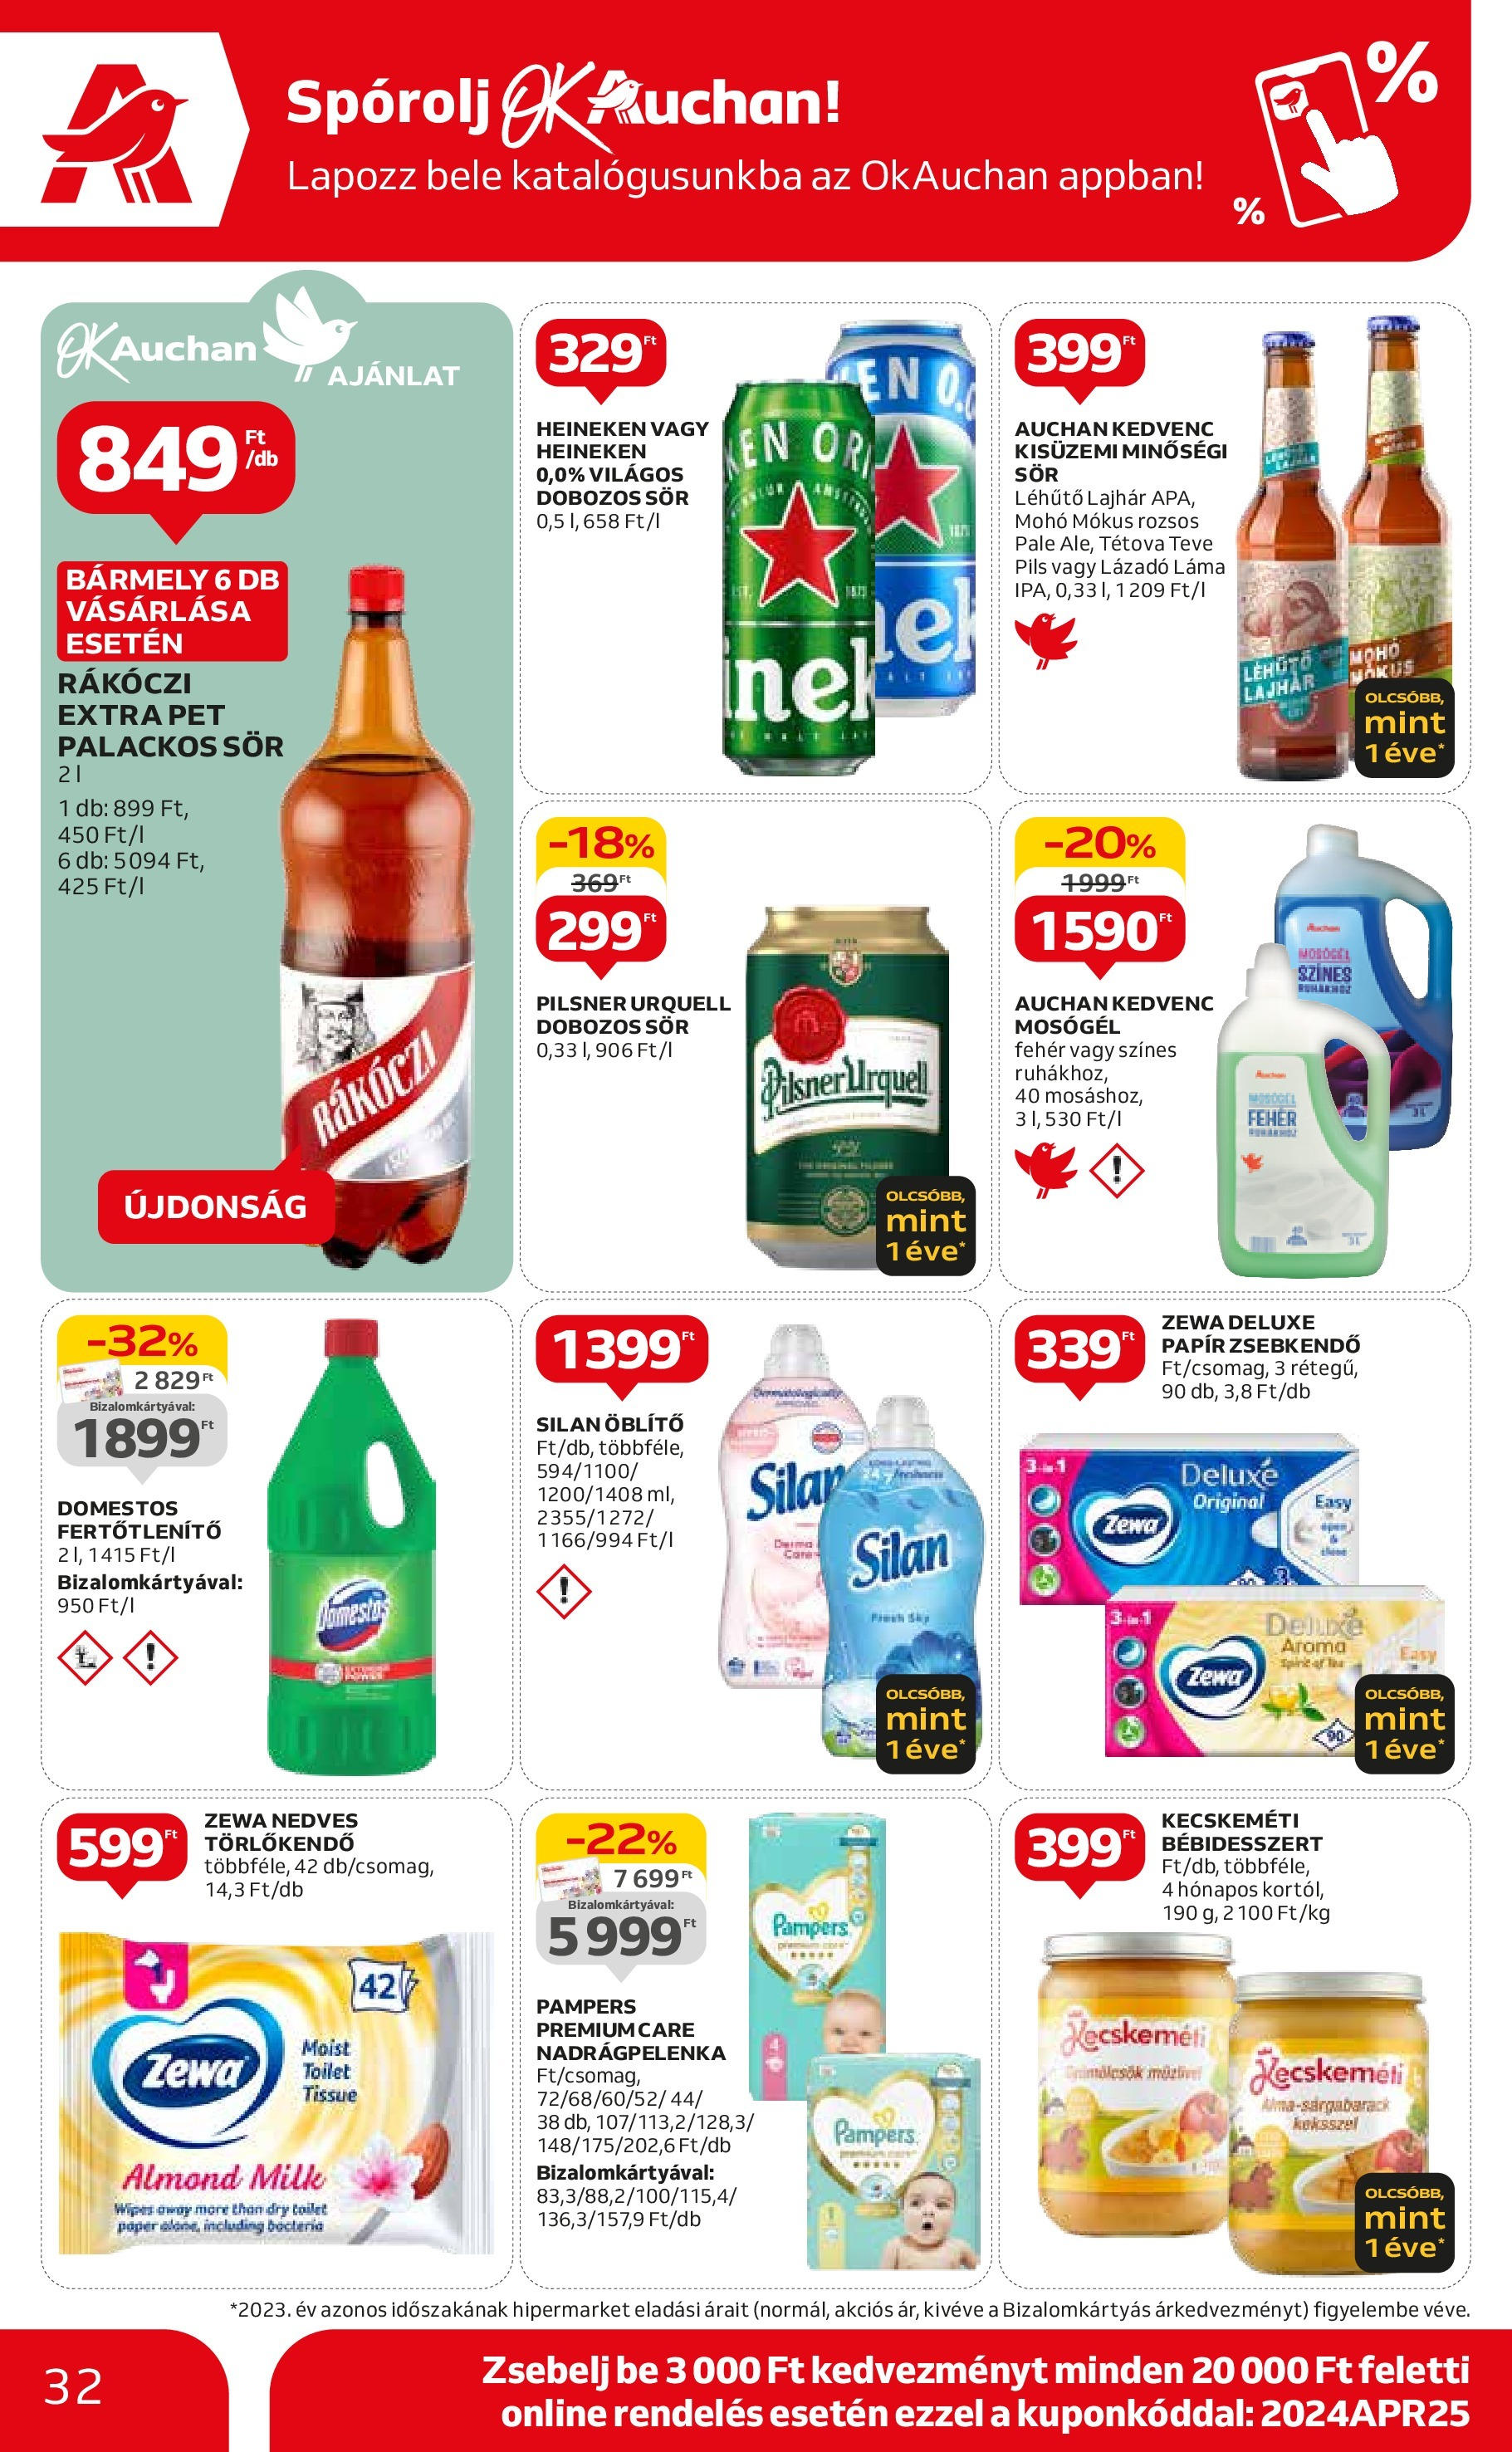 Auchan  Akciós újság - 2024.04.25. -tól/töl > akció, szórólap 🛍️ | Oldal: 32 | Termékek: Tévé, Pilsner urquell, Törlőkendő, Dobozos sör